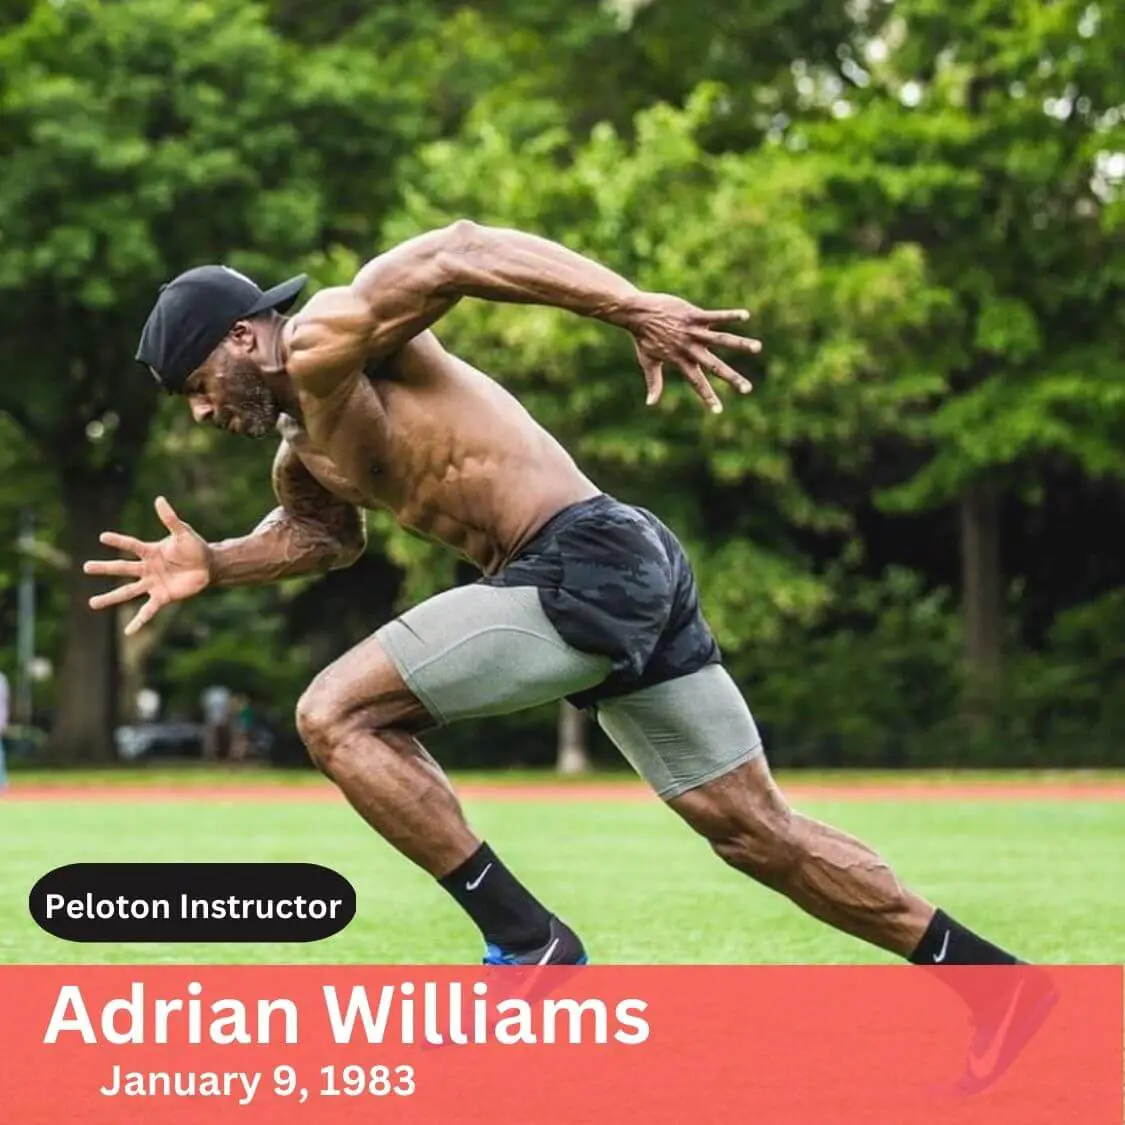 adrian williams peloton instructor